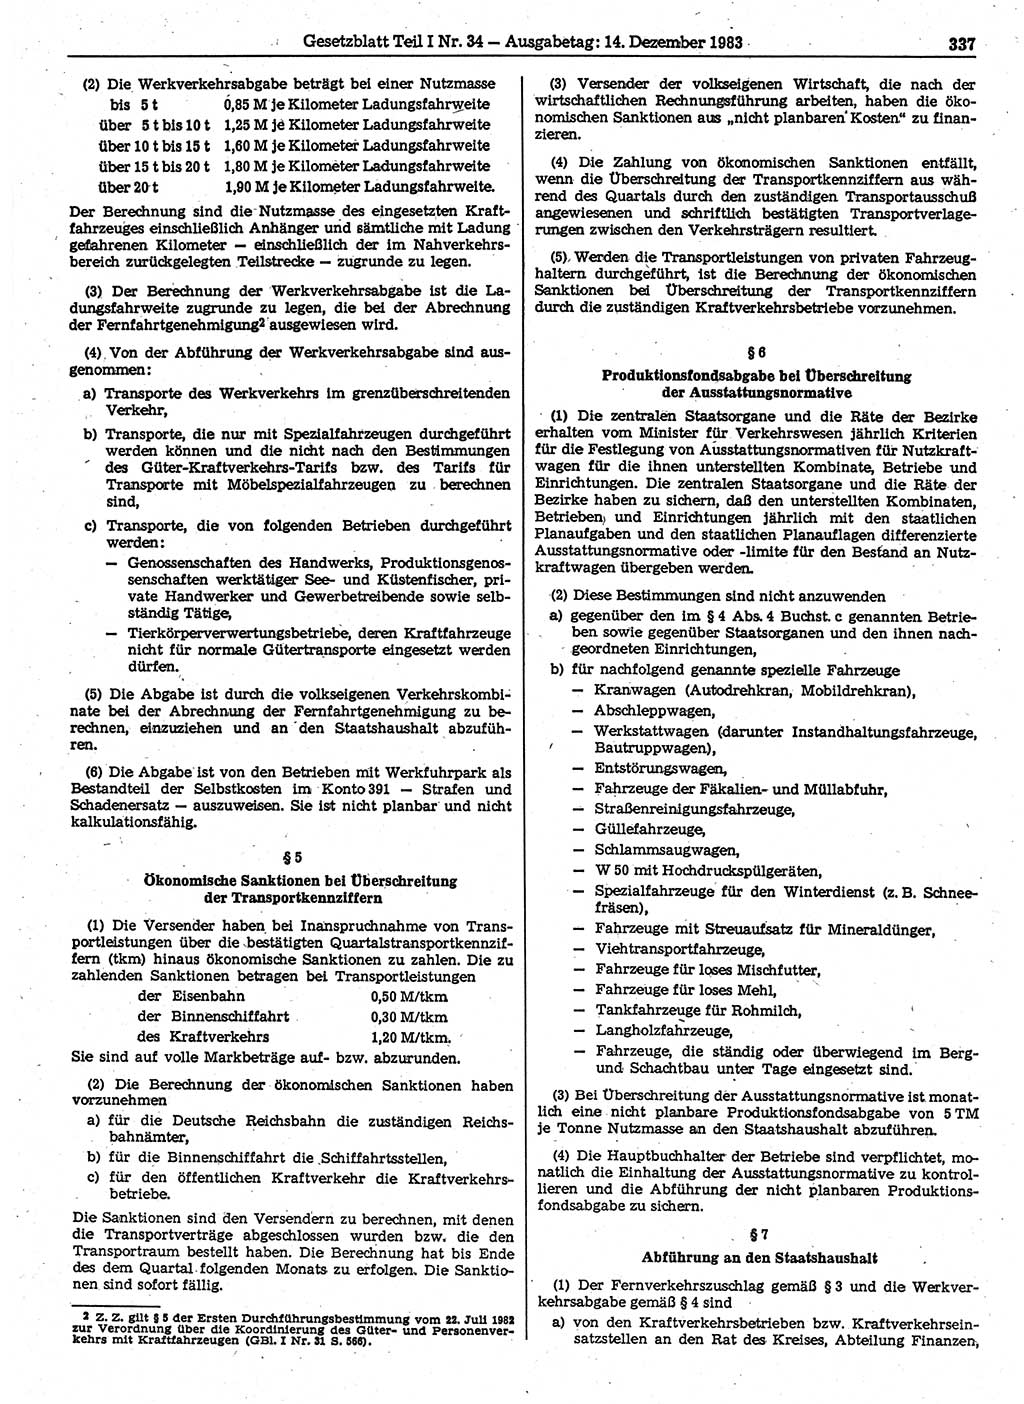 Gesetzblatt (GBl.) der Deutschen Demokratischen Republik (DDR) Teil Ⅰ 1983, Seite 337 (GBl. DDR Ⅰ 1983, S. 337)